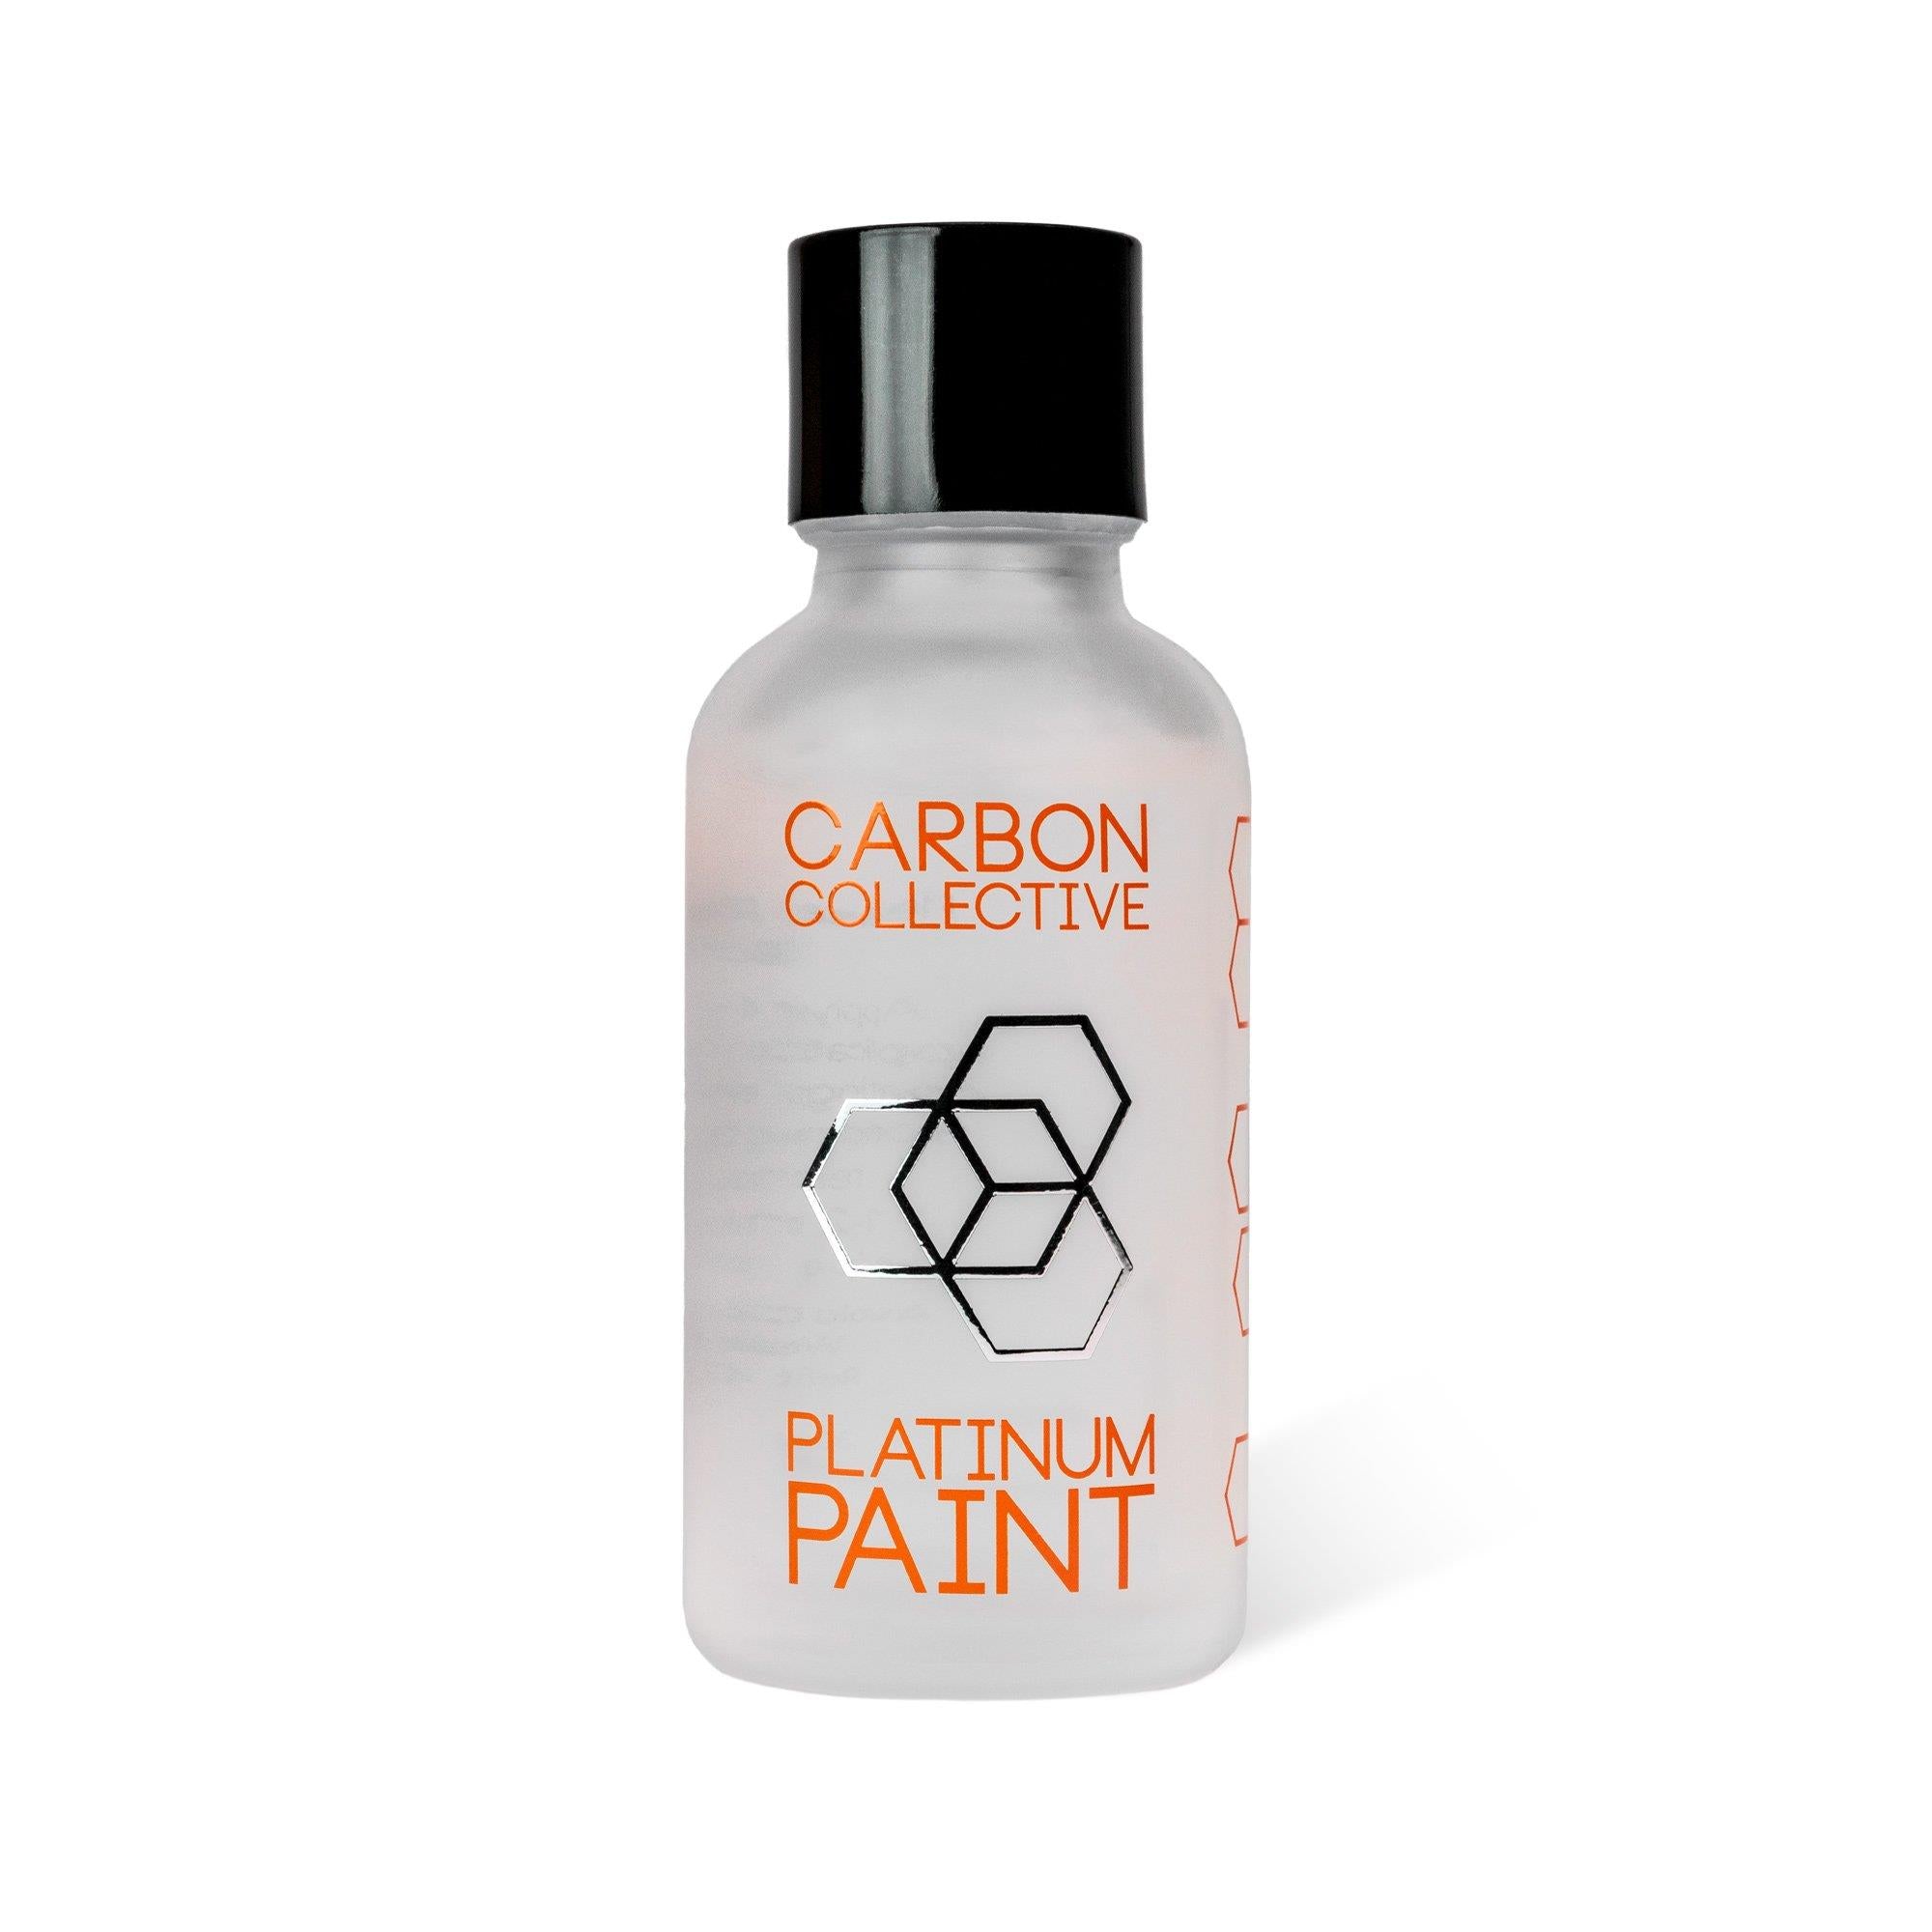 Carbon Collective Platinum Paint Coating